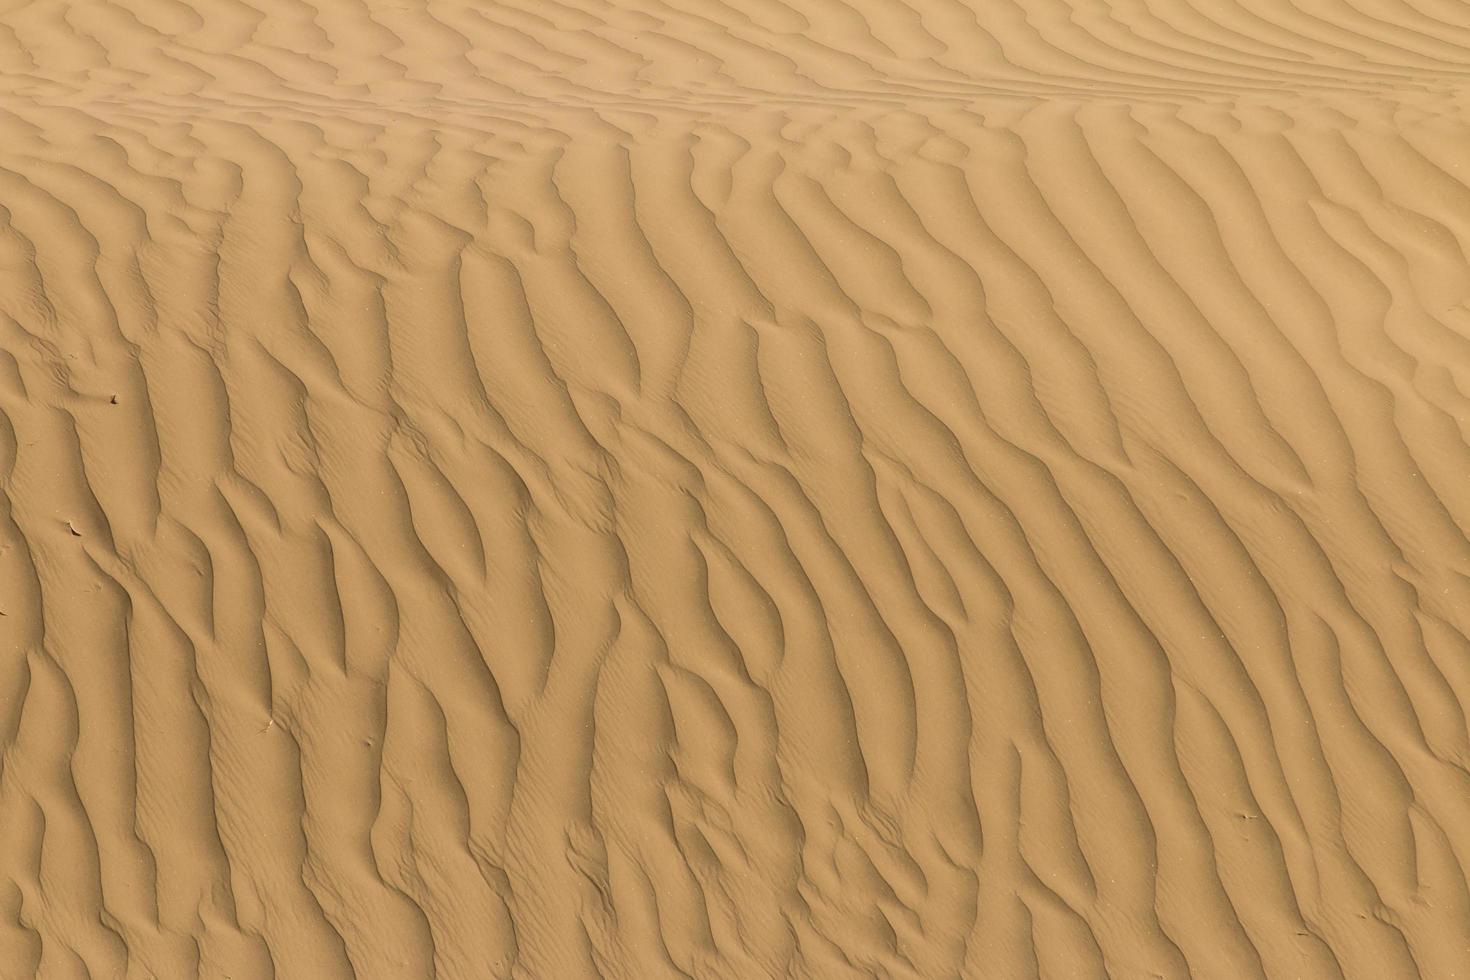 abstract detail van zand in de duinen foto